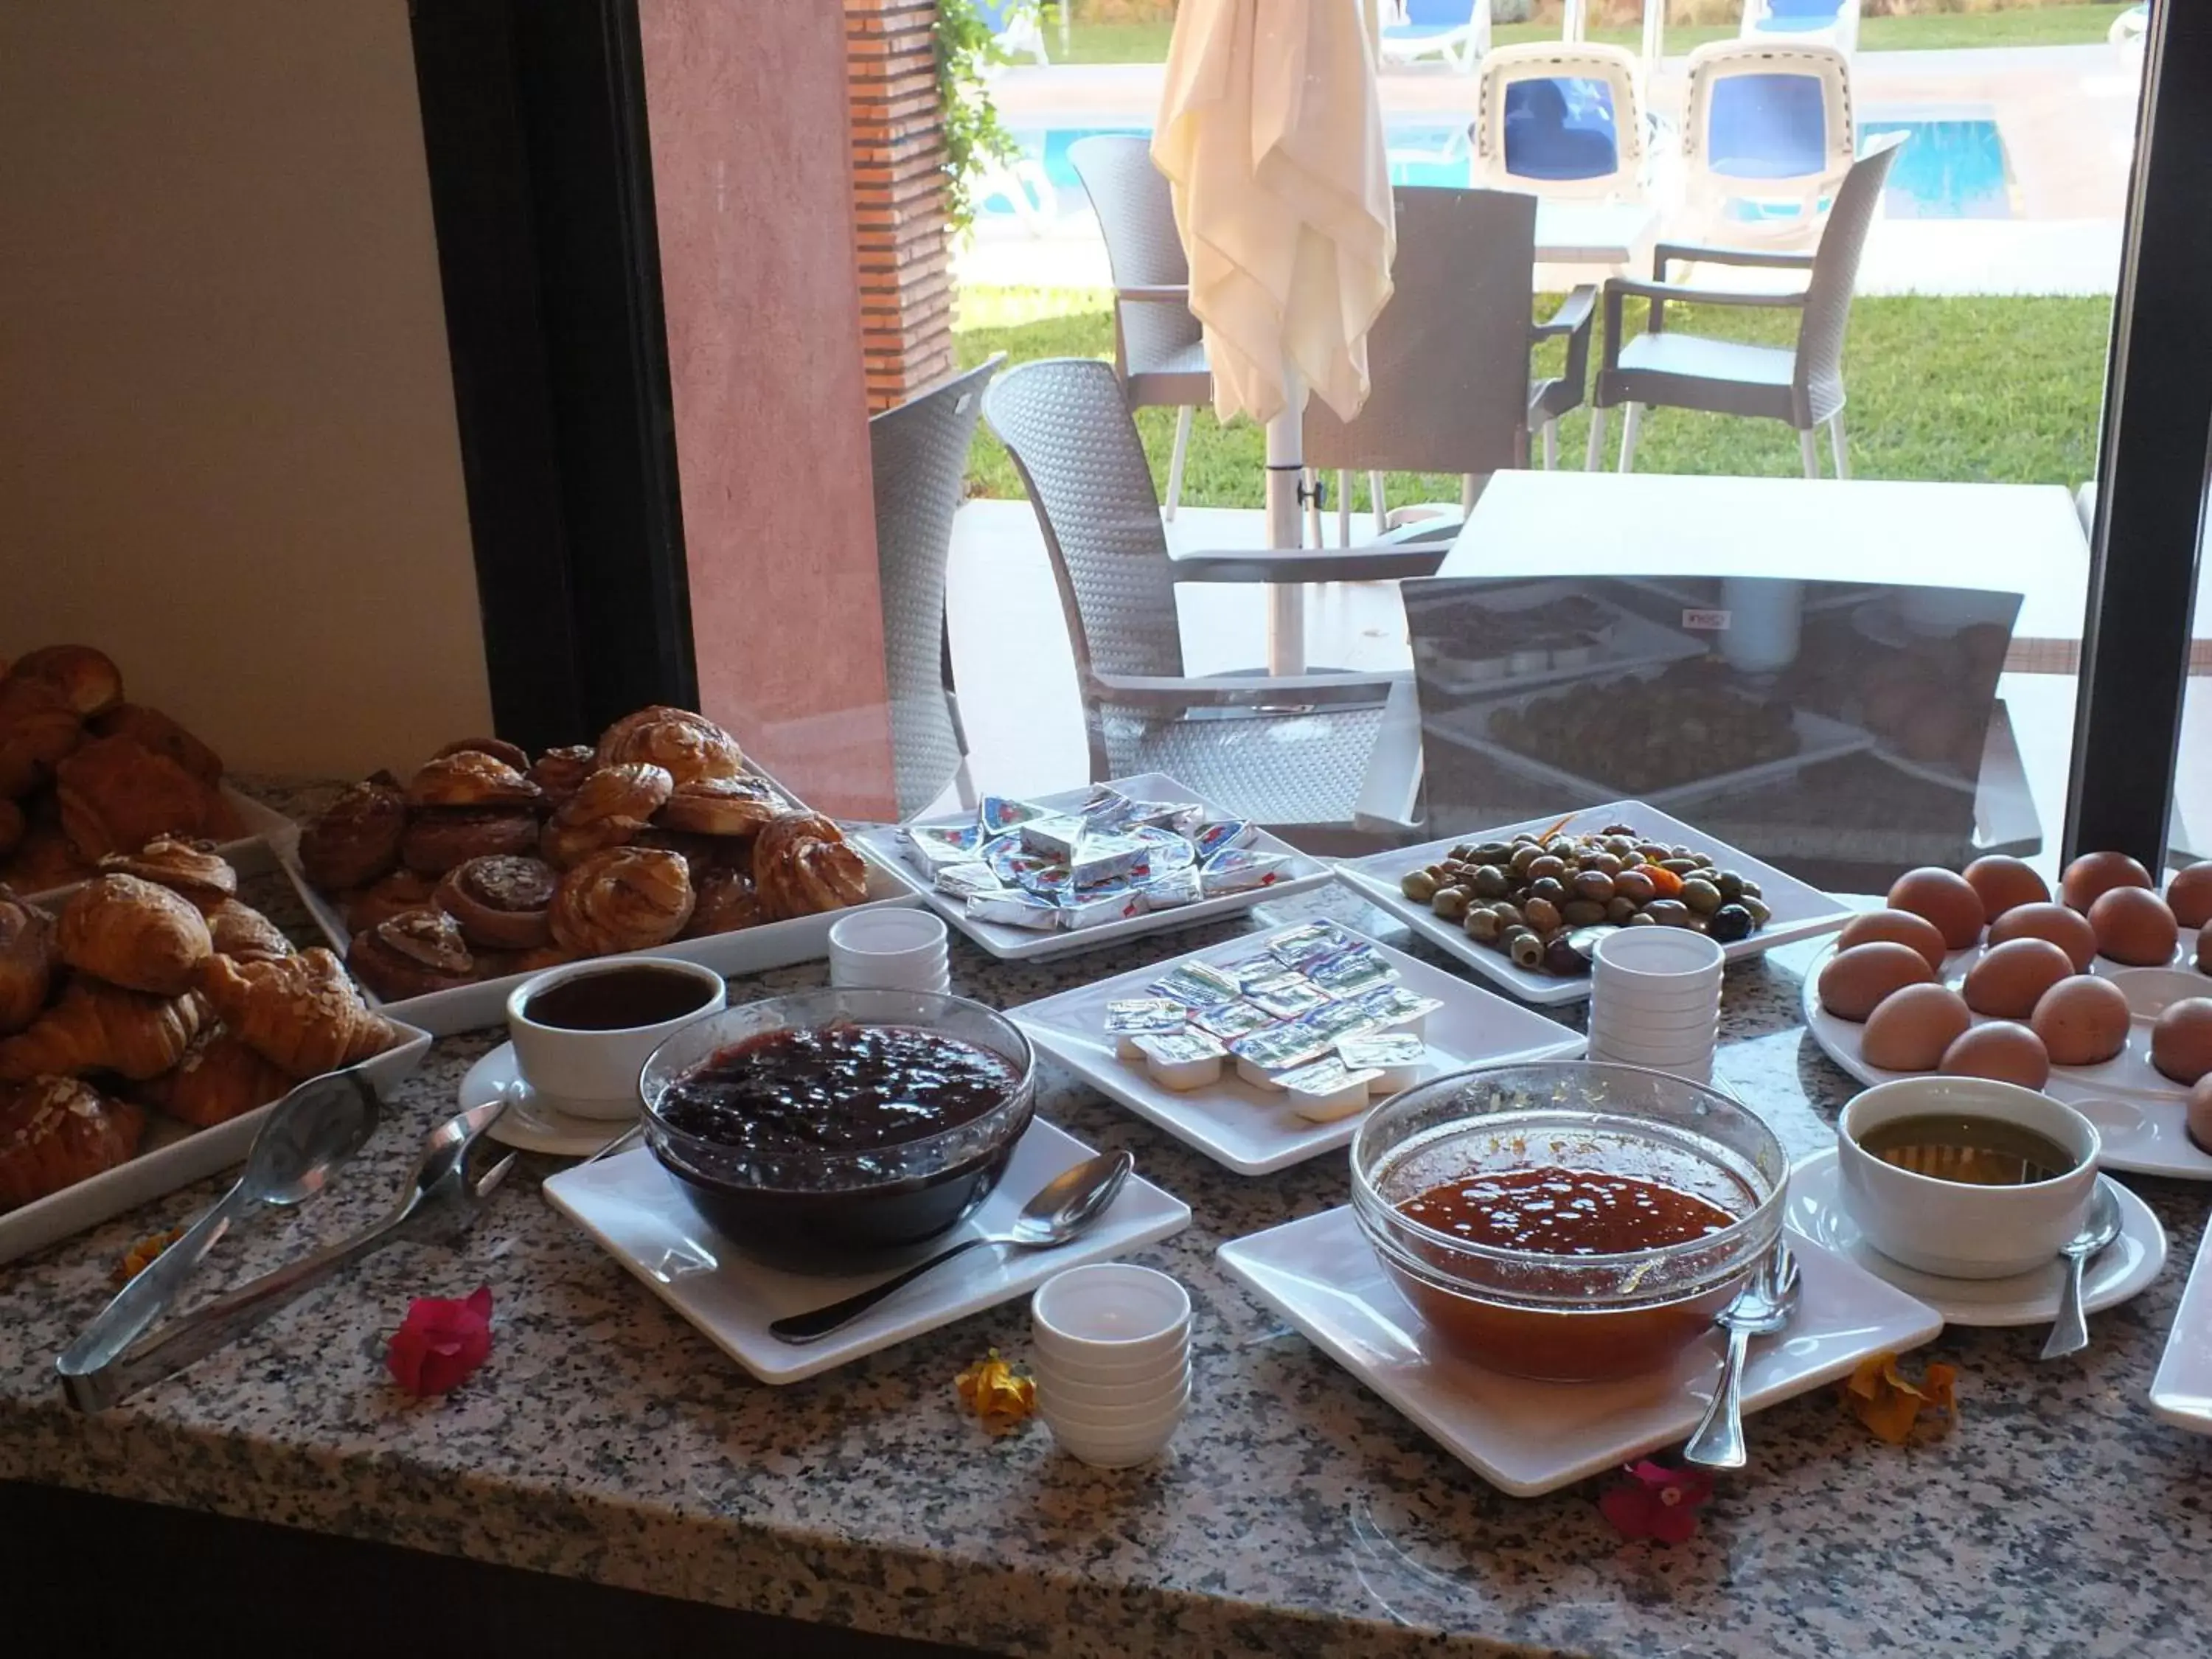 Buffet breakfast in Hotel Relax Marrakech